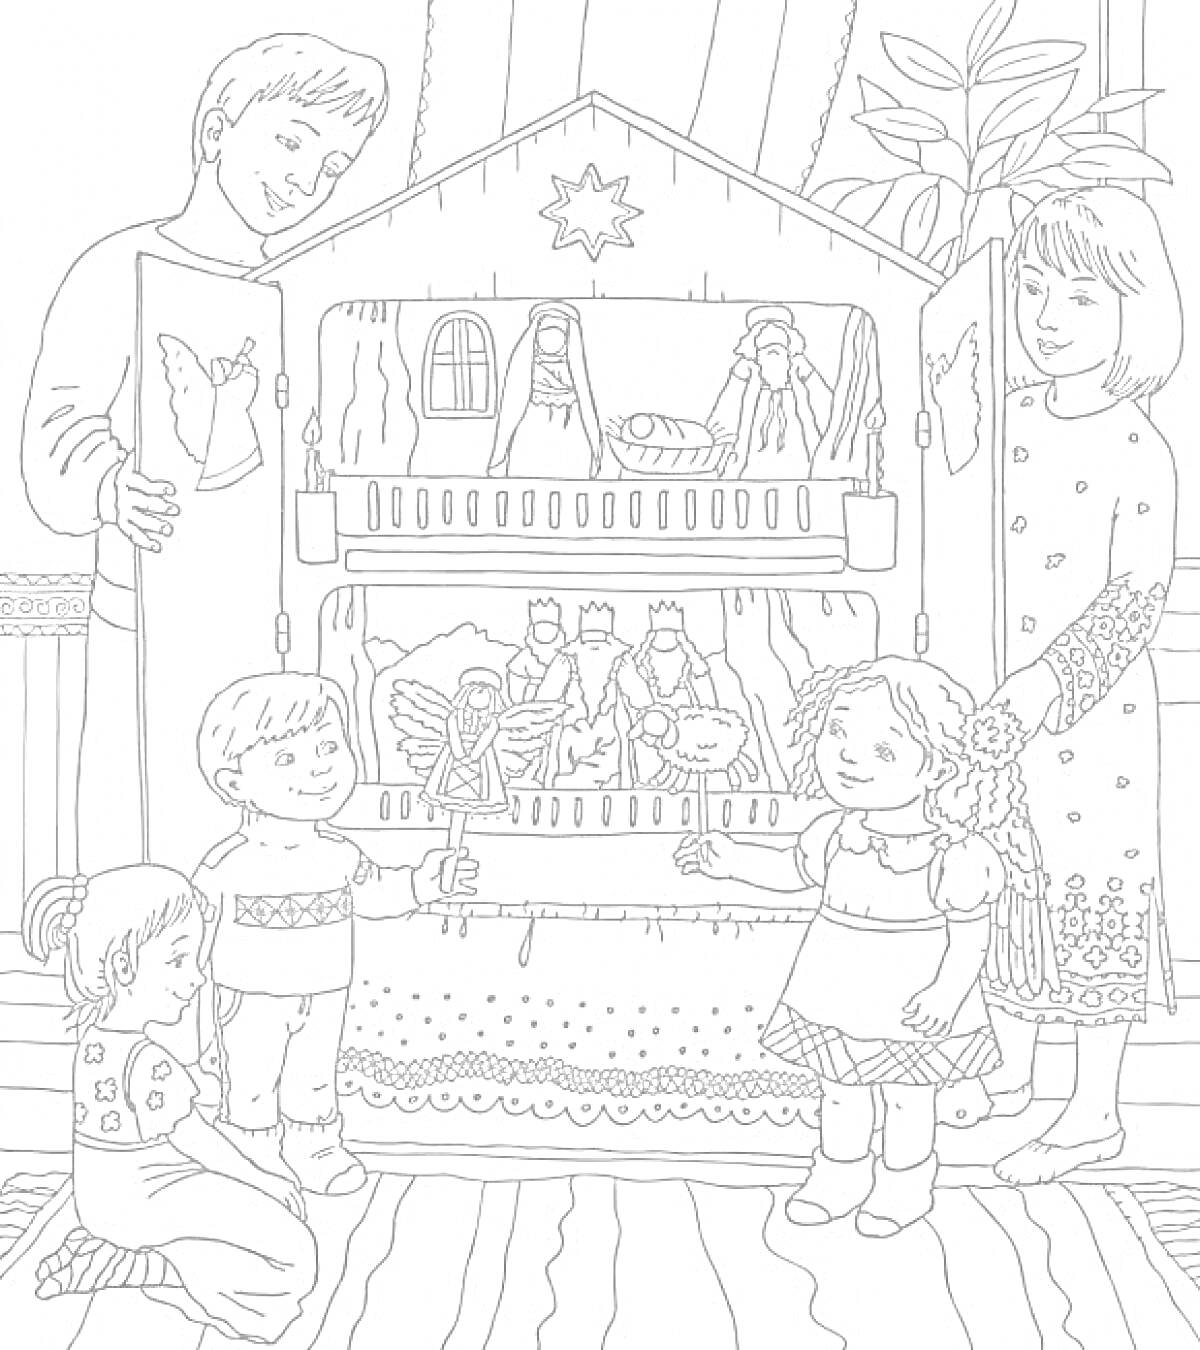 Семья возле рождественского вертепа с фигурками